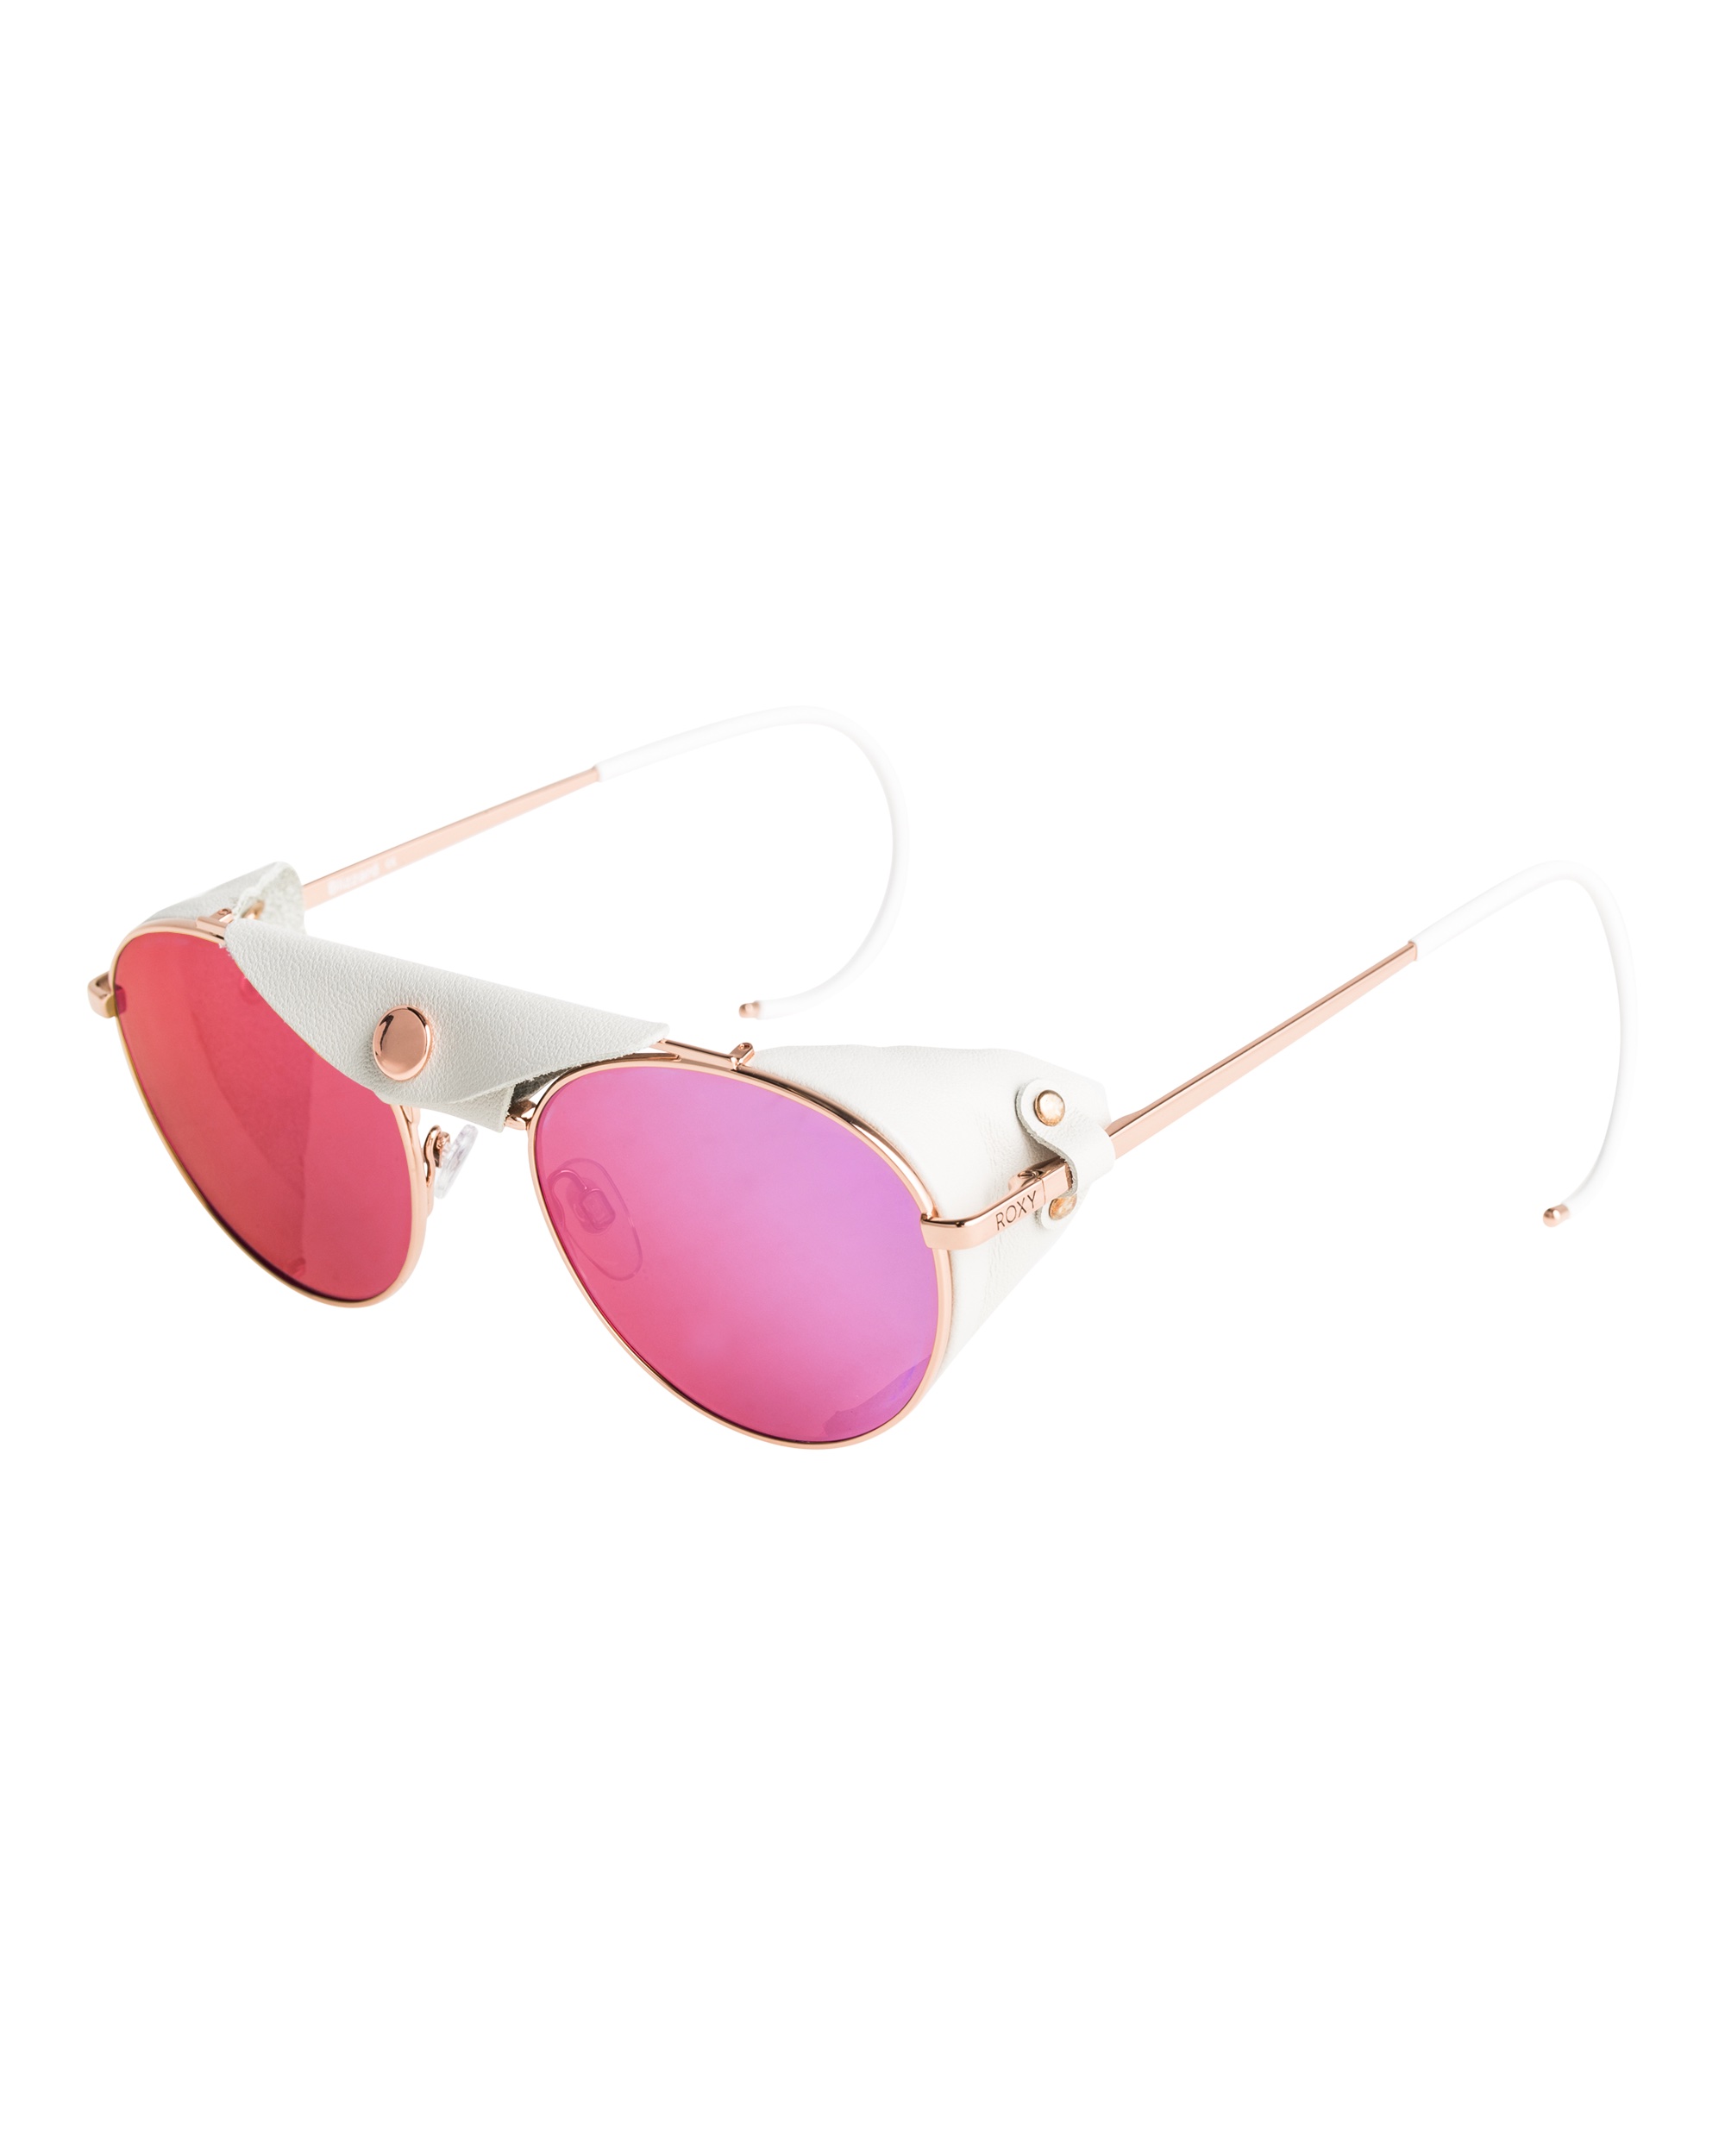 Roxy S/S 22 Sunglasses Preview